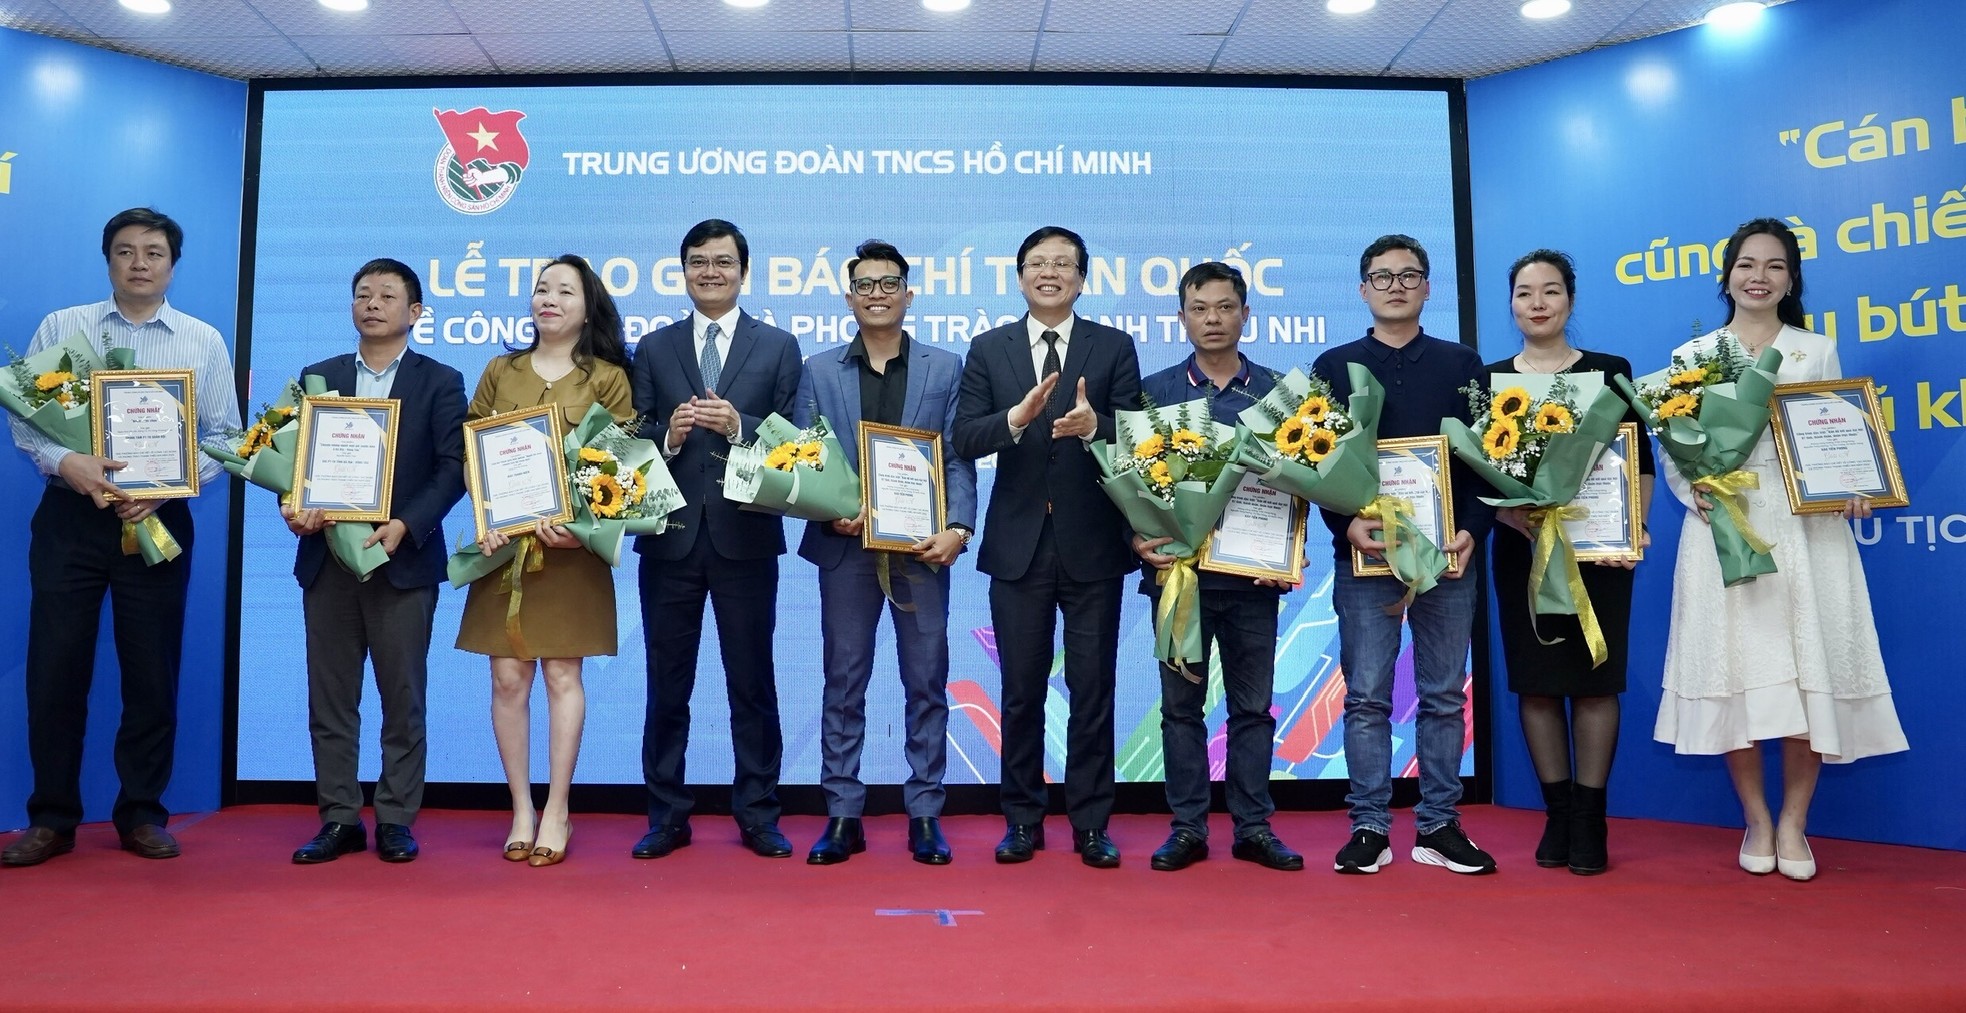  Báo Tiền Phong đoạt giải A Giải báo chí toàn quốc về công tác Đoàn, phong trào thanh thiếu nhi 2022 ảnh 2